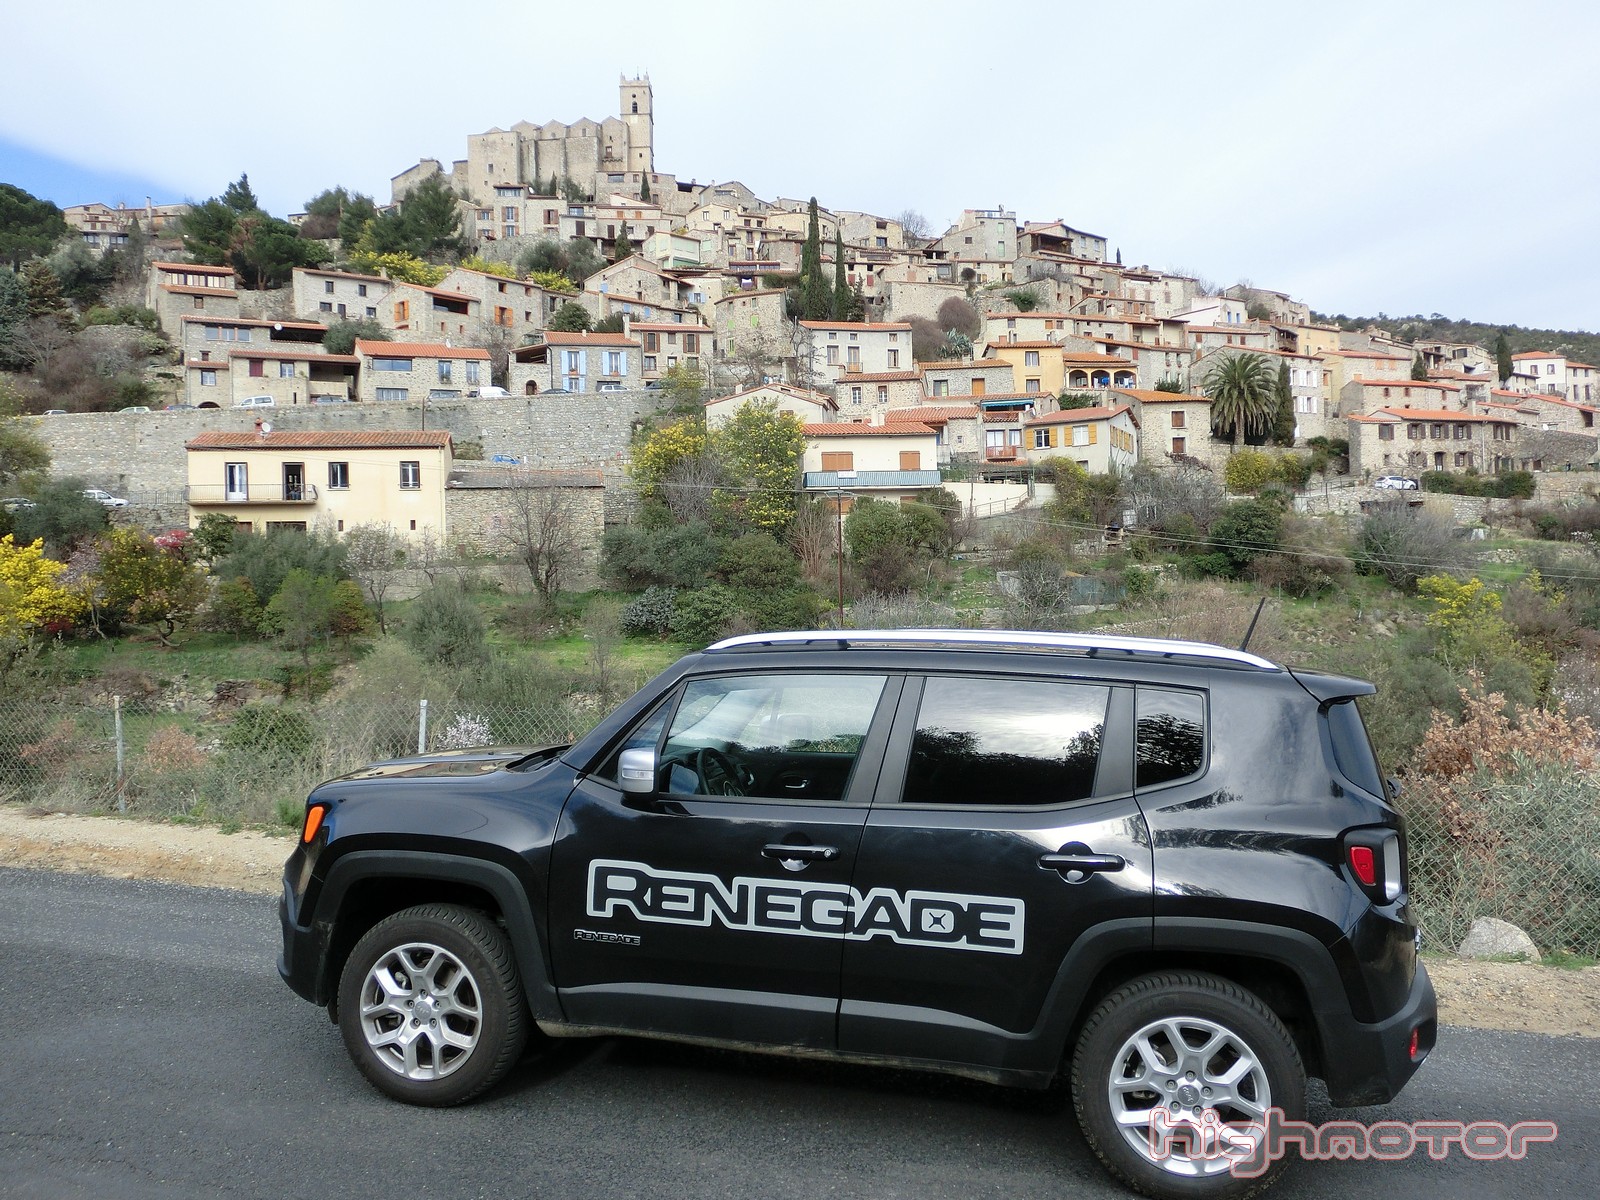 Prueba Jeep Renegade: Resumen ruta y opinión